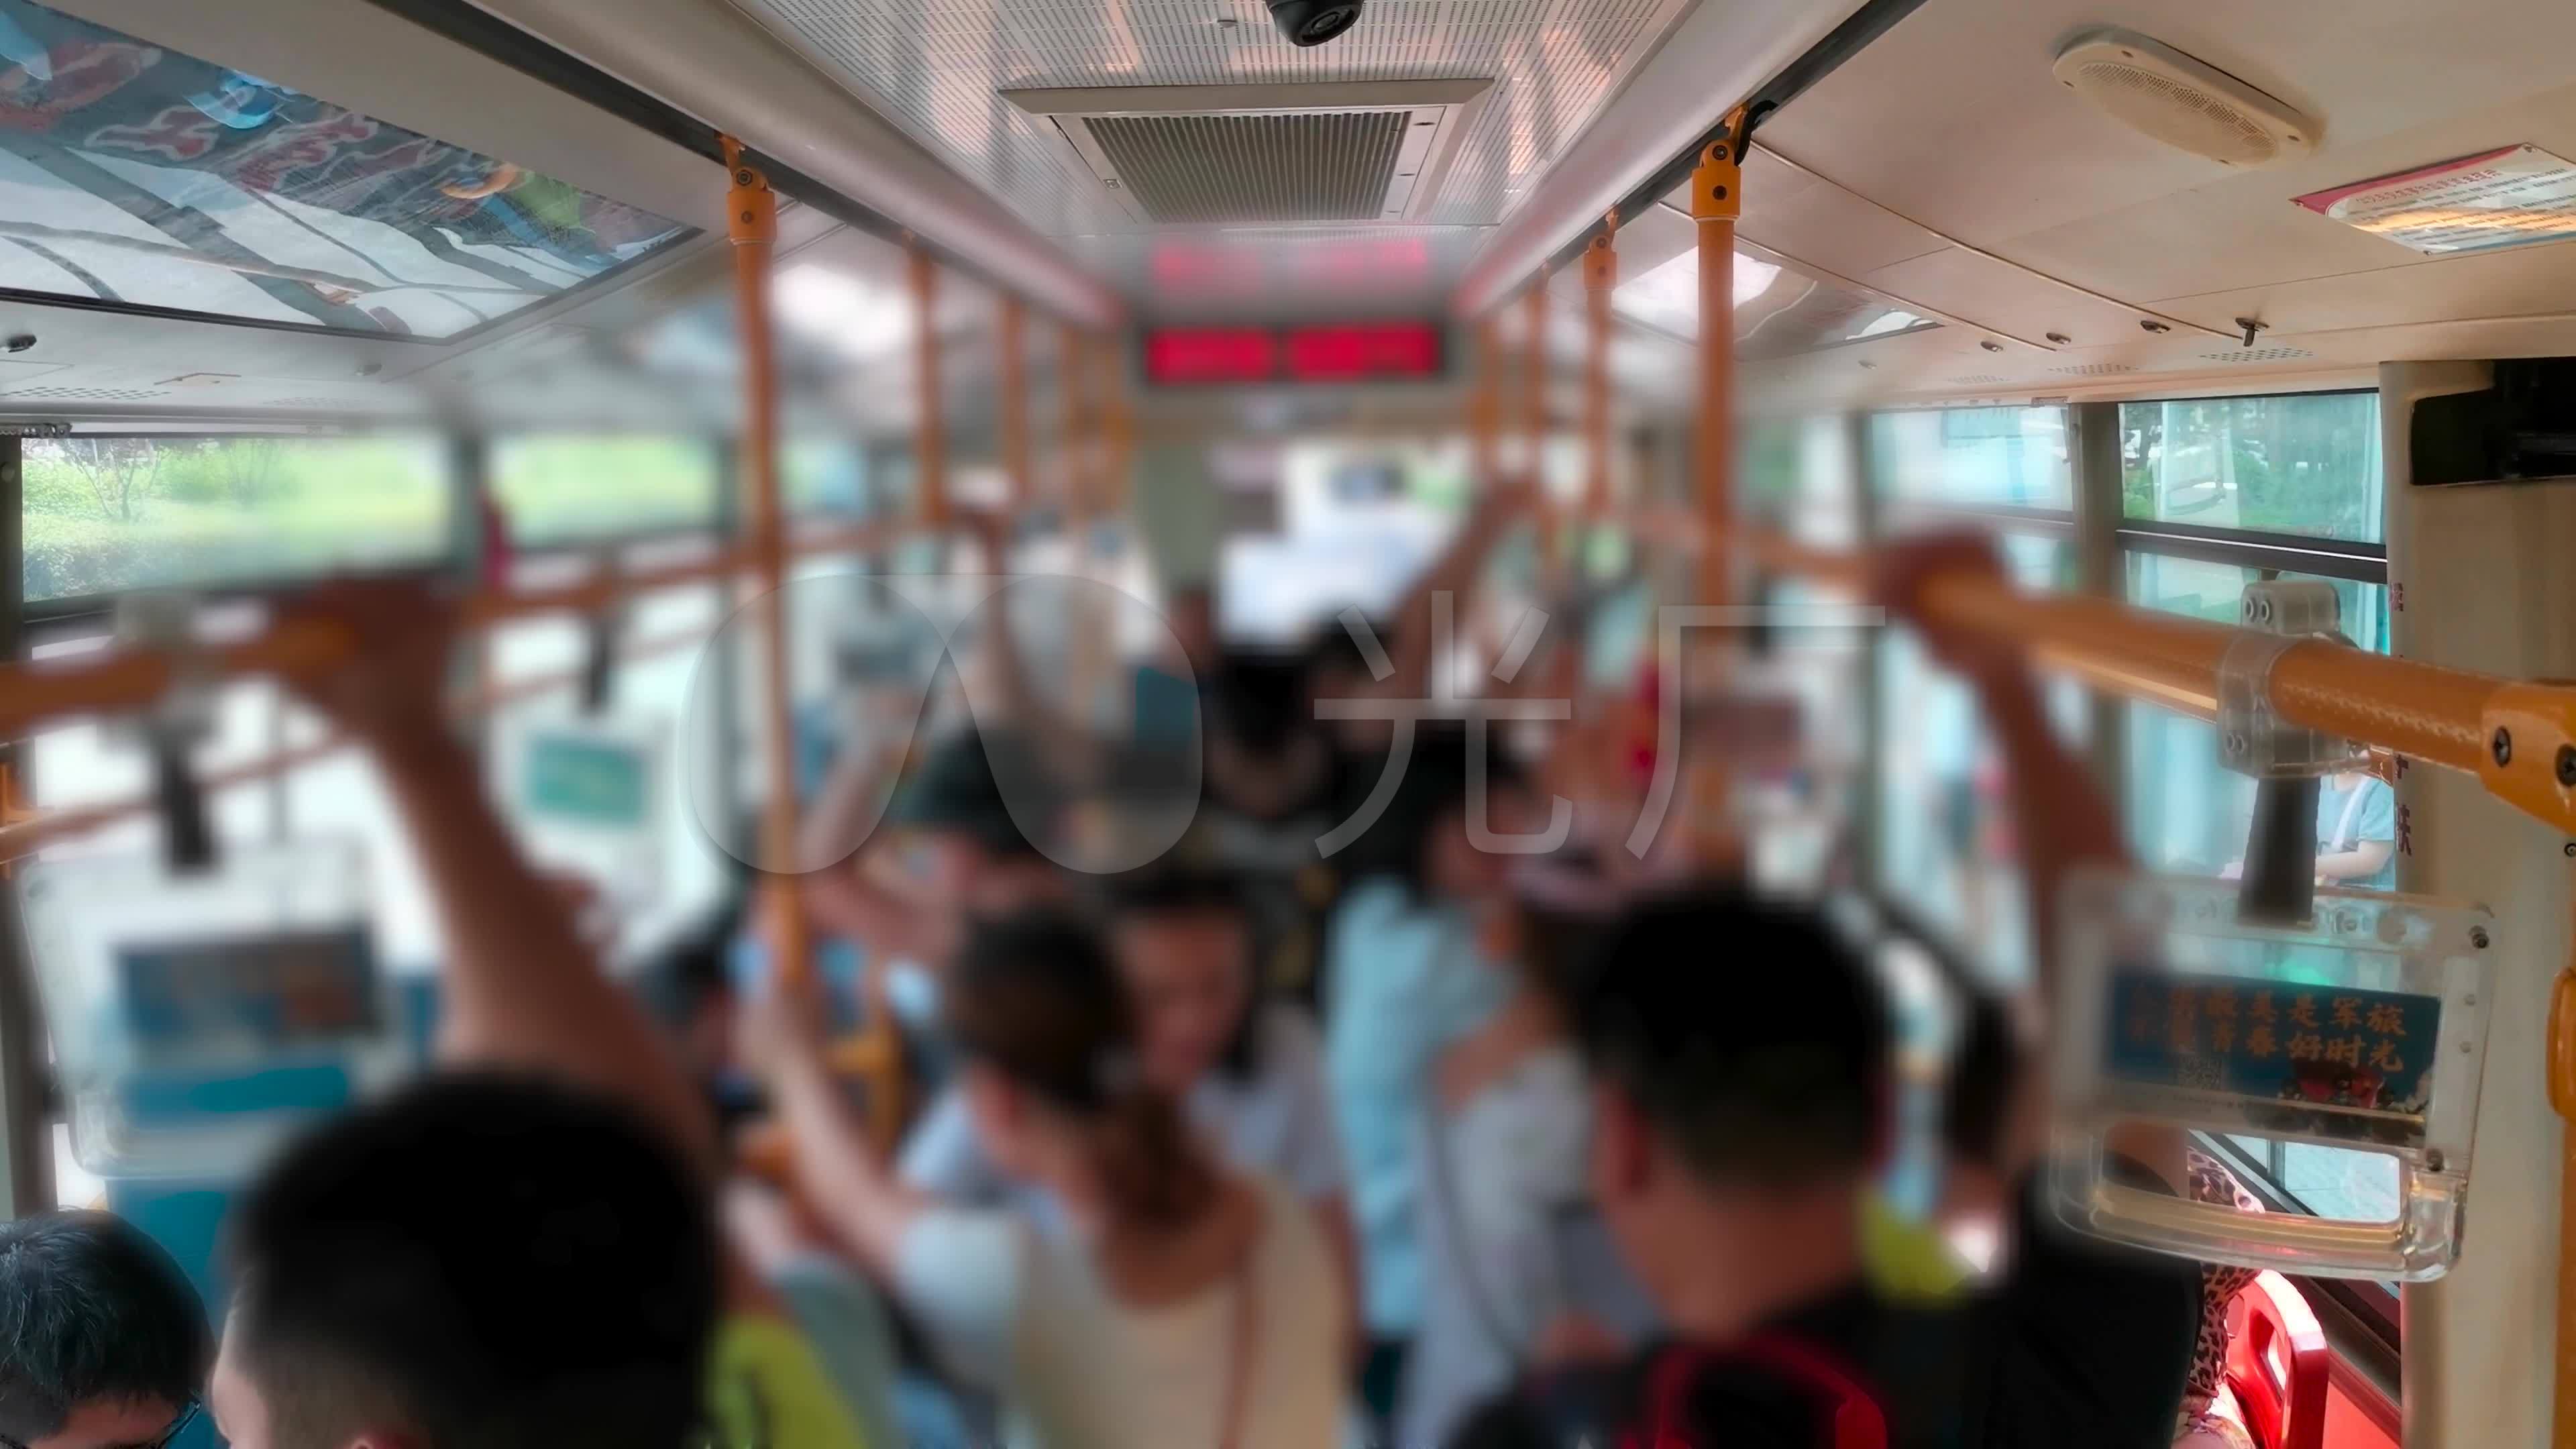 公交车摄影图高清摄影大图-千库网